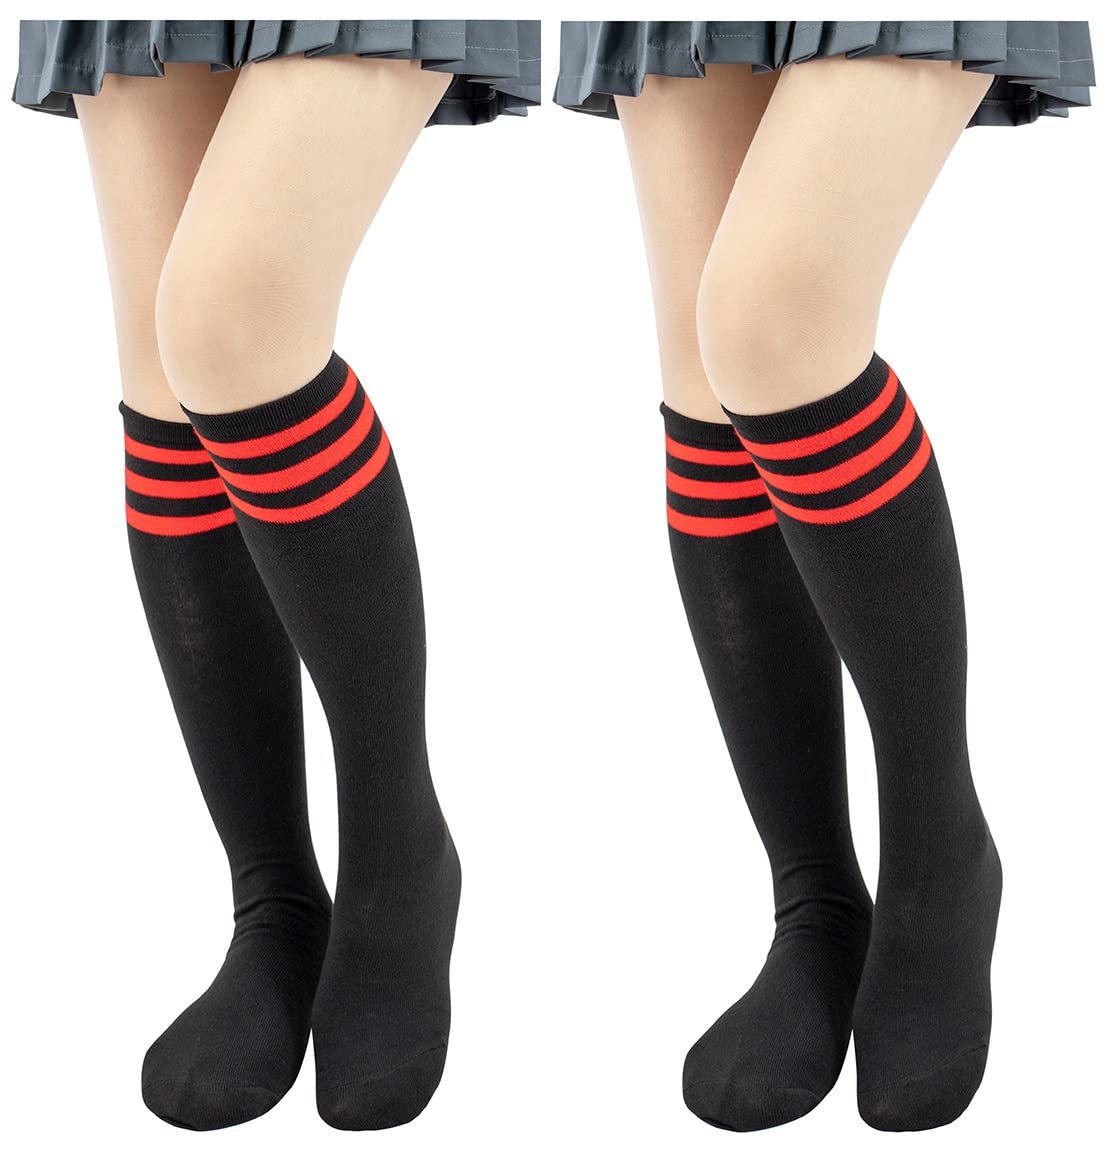 DAZCOS Classic Schoolgirl Triple Striped Socks Over The Calf Tube Socks for Valentine&